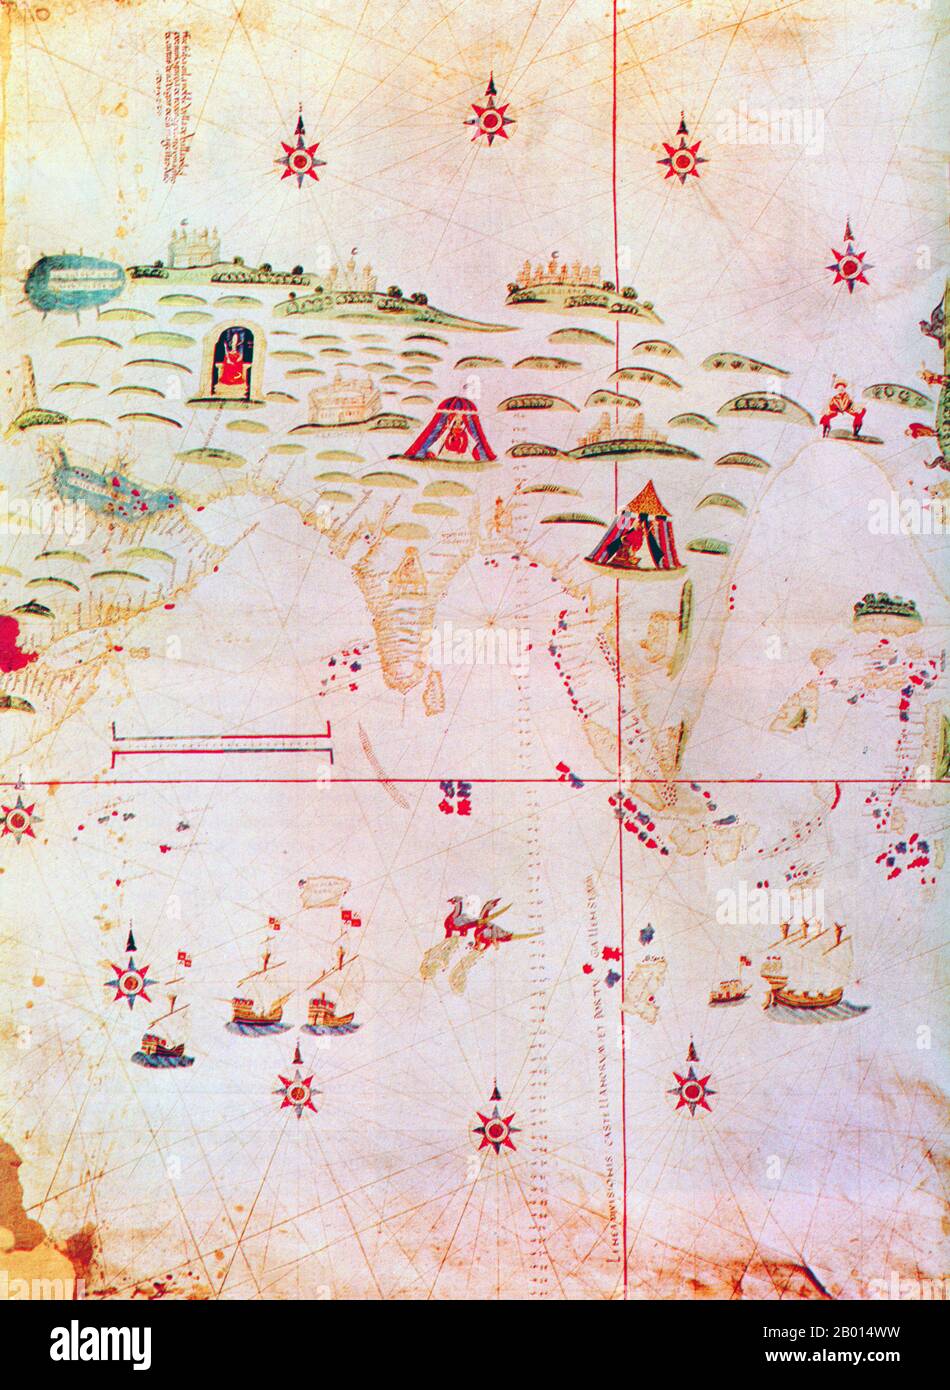 Spanien/Portugal/Asien: Eine Asien-Karte aus dem Jahr 1522, die einen ‘„Santemeridian“ zeigt, um die portugiesische Einflusssphäre (westlich der roten Linie) von den Spaniern abzugrenzen. Der Vertrag von Tordesillas im Jahr 1494, der vom in Spanien geborenen Papst Alexander VI. Geleitet wurde, teilte die Welt in zwei Hälften – in spanische und portugiesische Gebiete. Nach der Entdeckung der Gewürzinseln der Molukken durch Portugal im Jahr 1512 bestritt Spanien jedoch die Demarkationslinie. Das Problem wurde nie vollständig gelöst, aber der Vertrag von Zaragoza im Jahr 1529 versuchte, die Angelegenheit zu lösen. Stockfoto